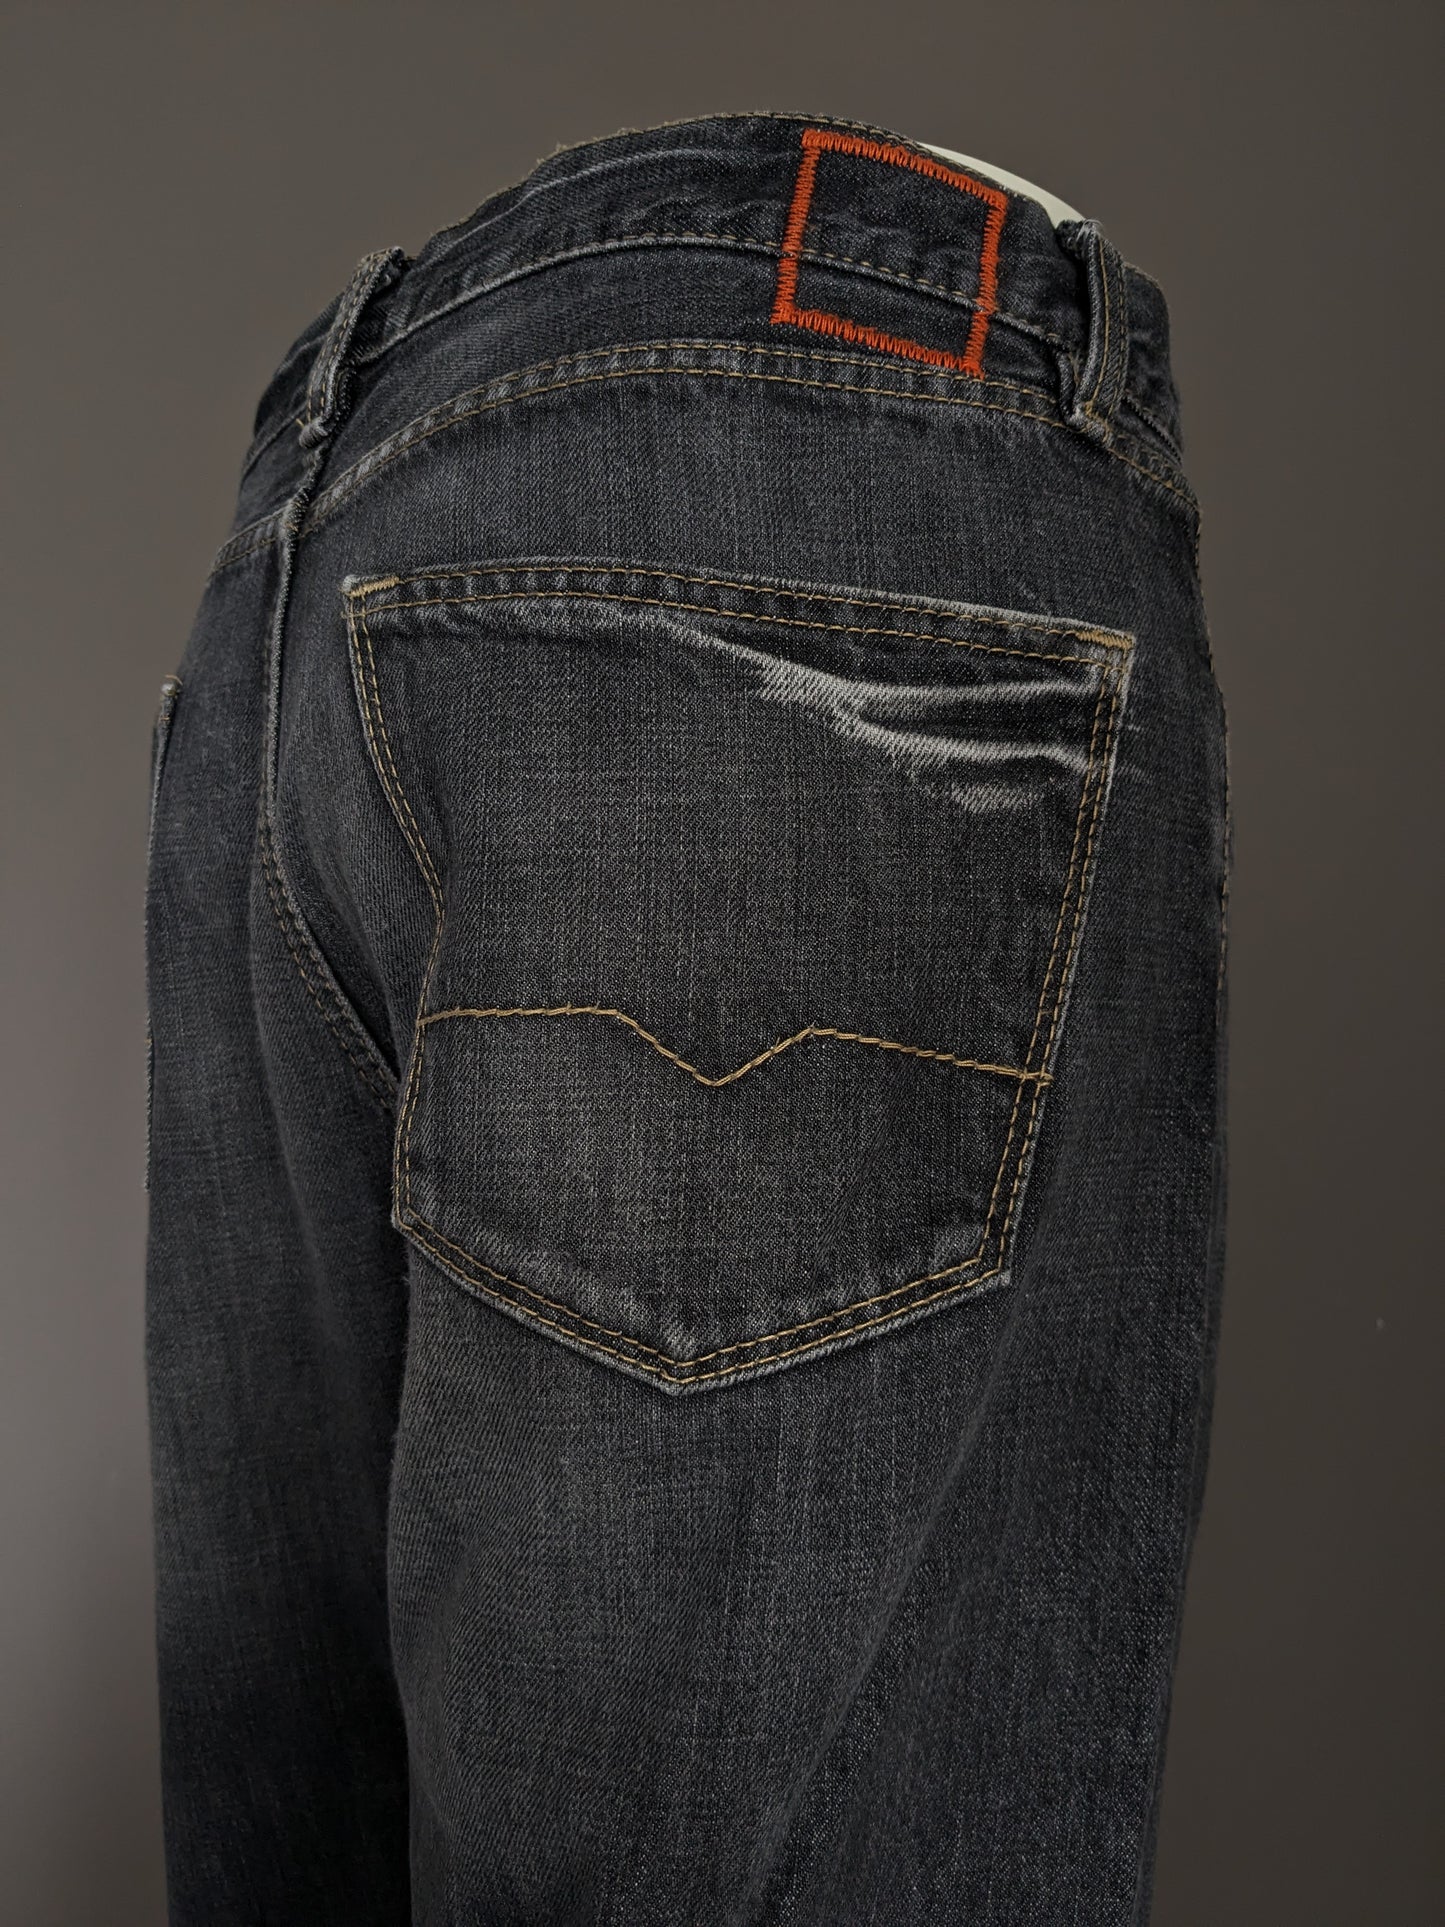 Boss Hugo Boss Jeans. Colorato nero. Taglia W38 - L34.